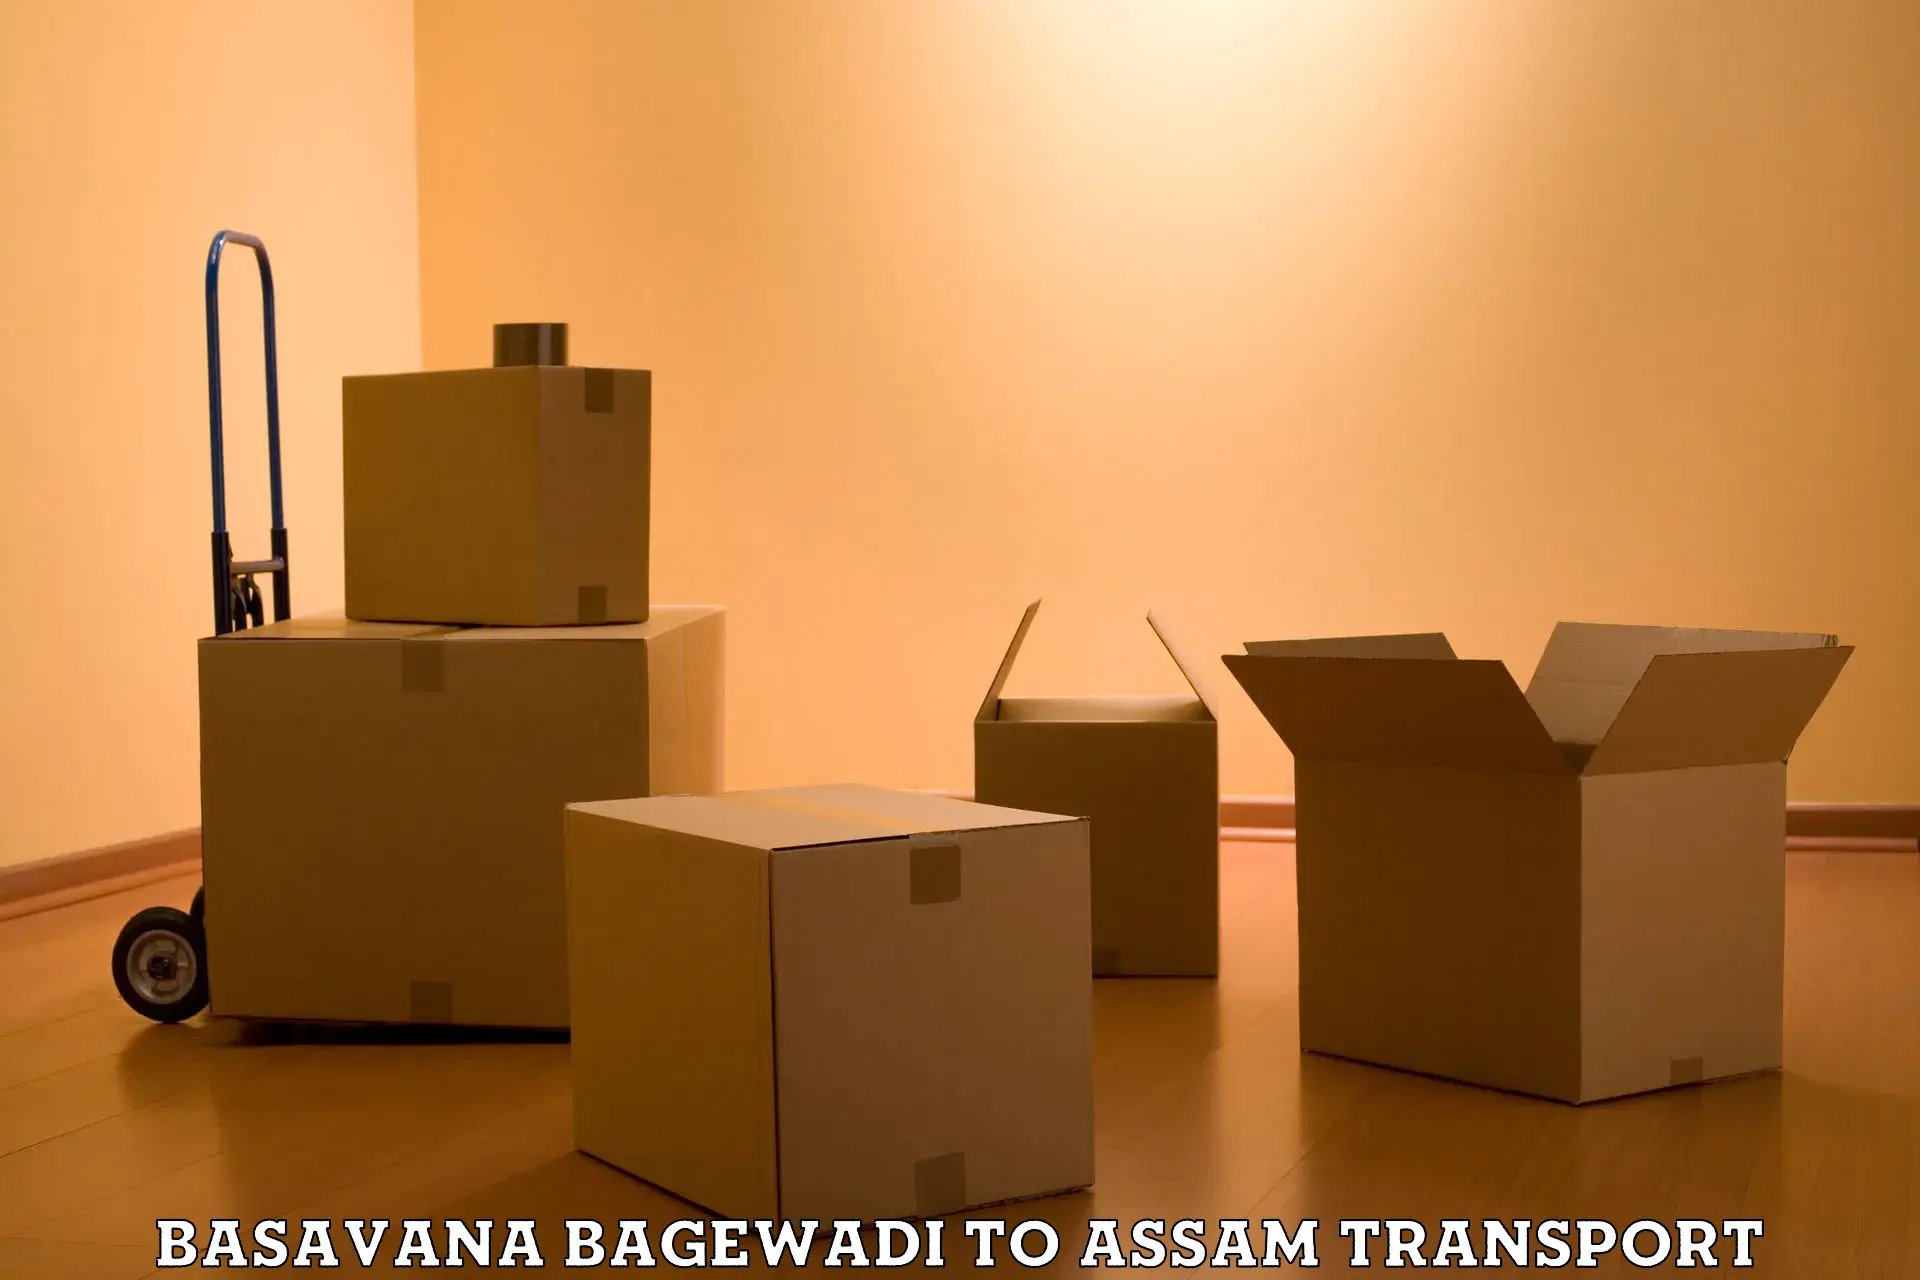 Furniture transport service Basavana Bagewadi to Sivasagar